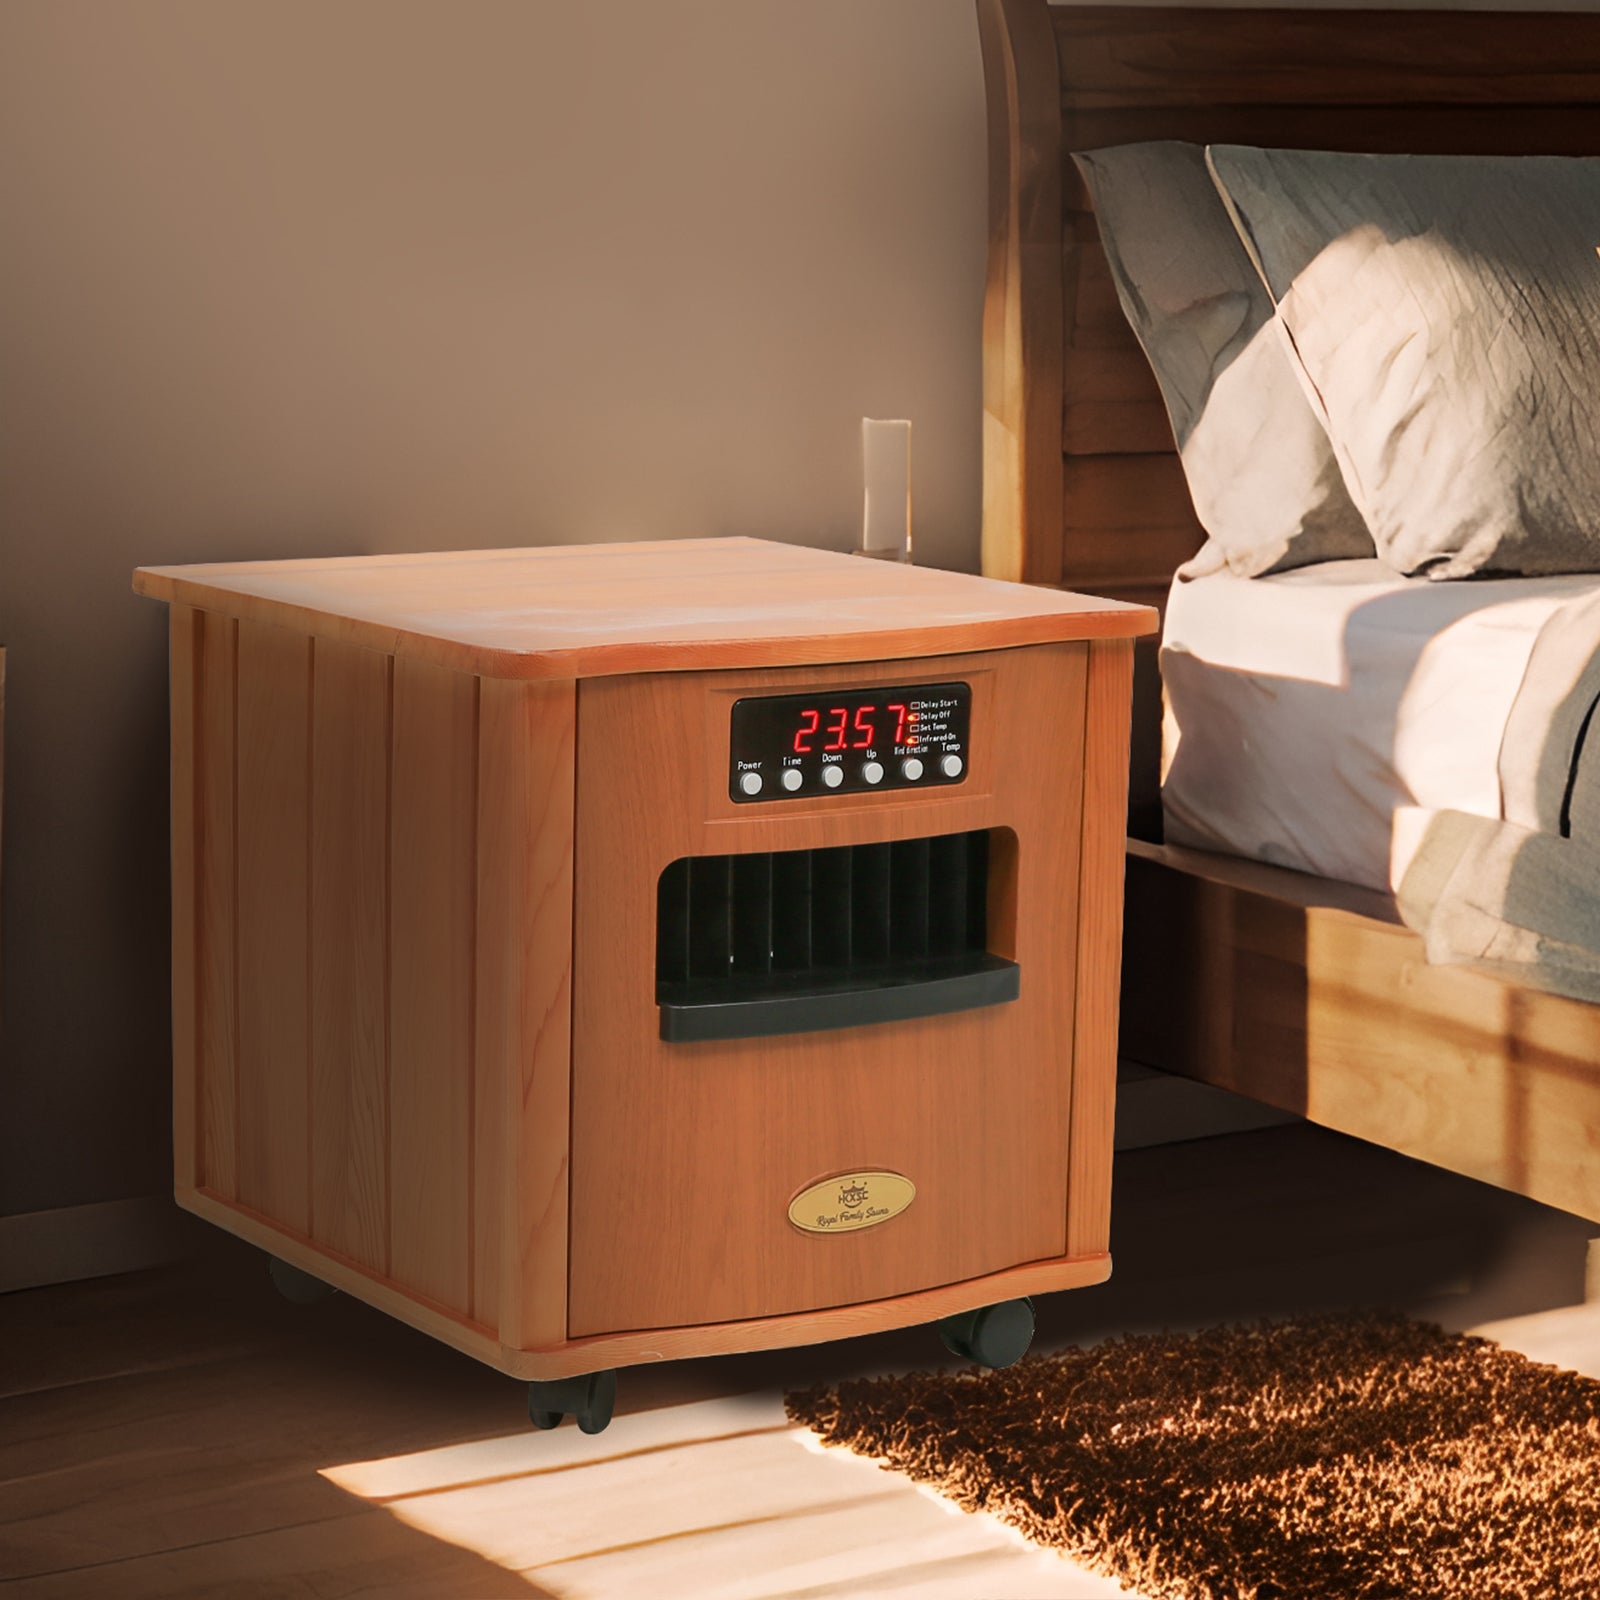 HKXSC 501R Bedside Cupboard Portable Heater In Red Cedar